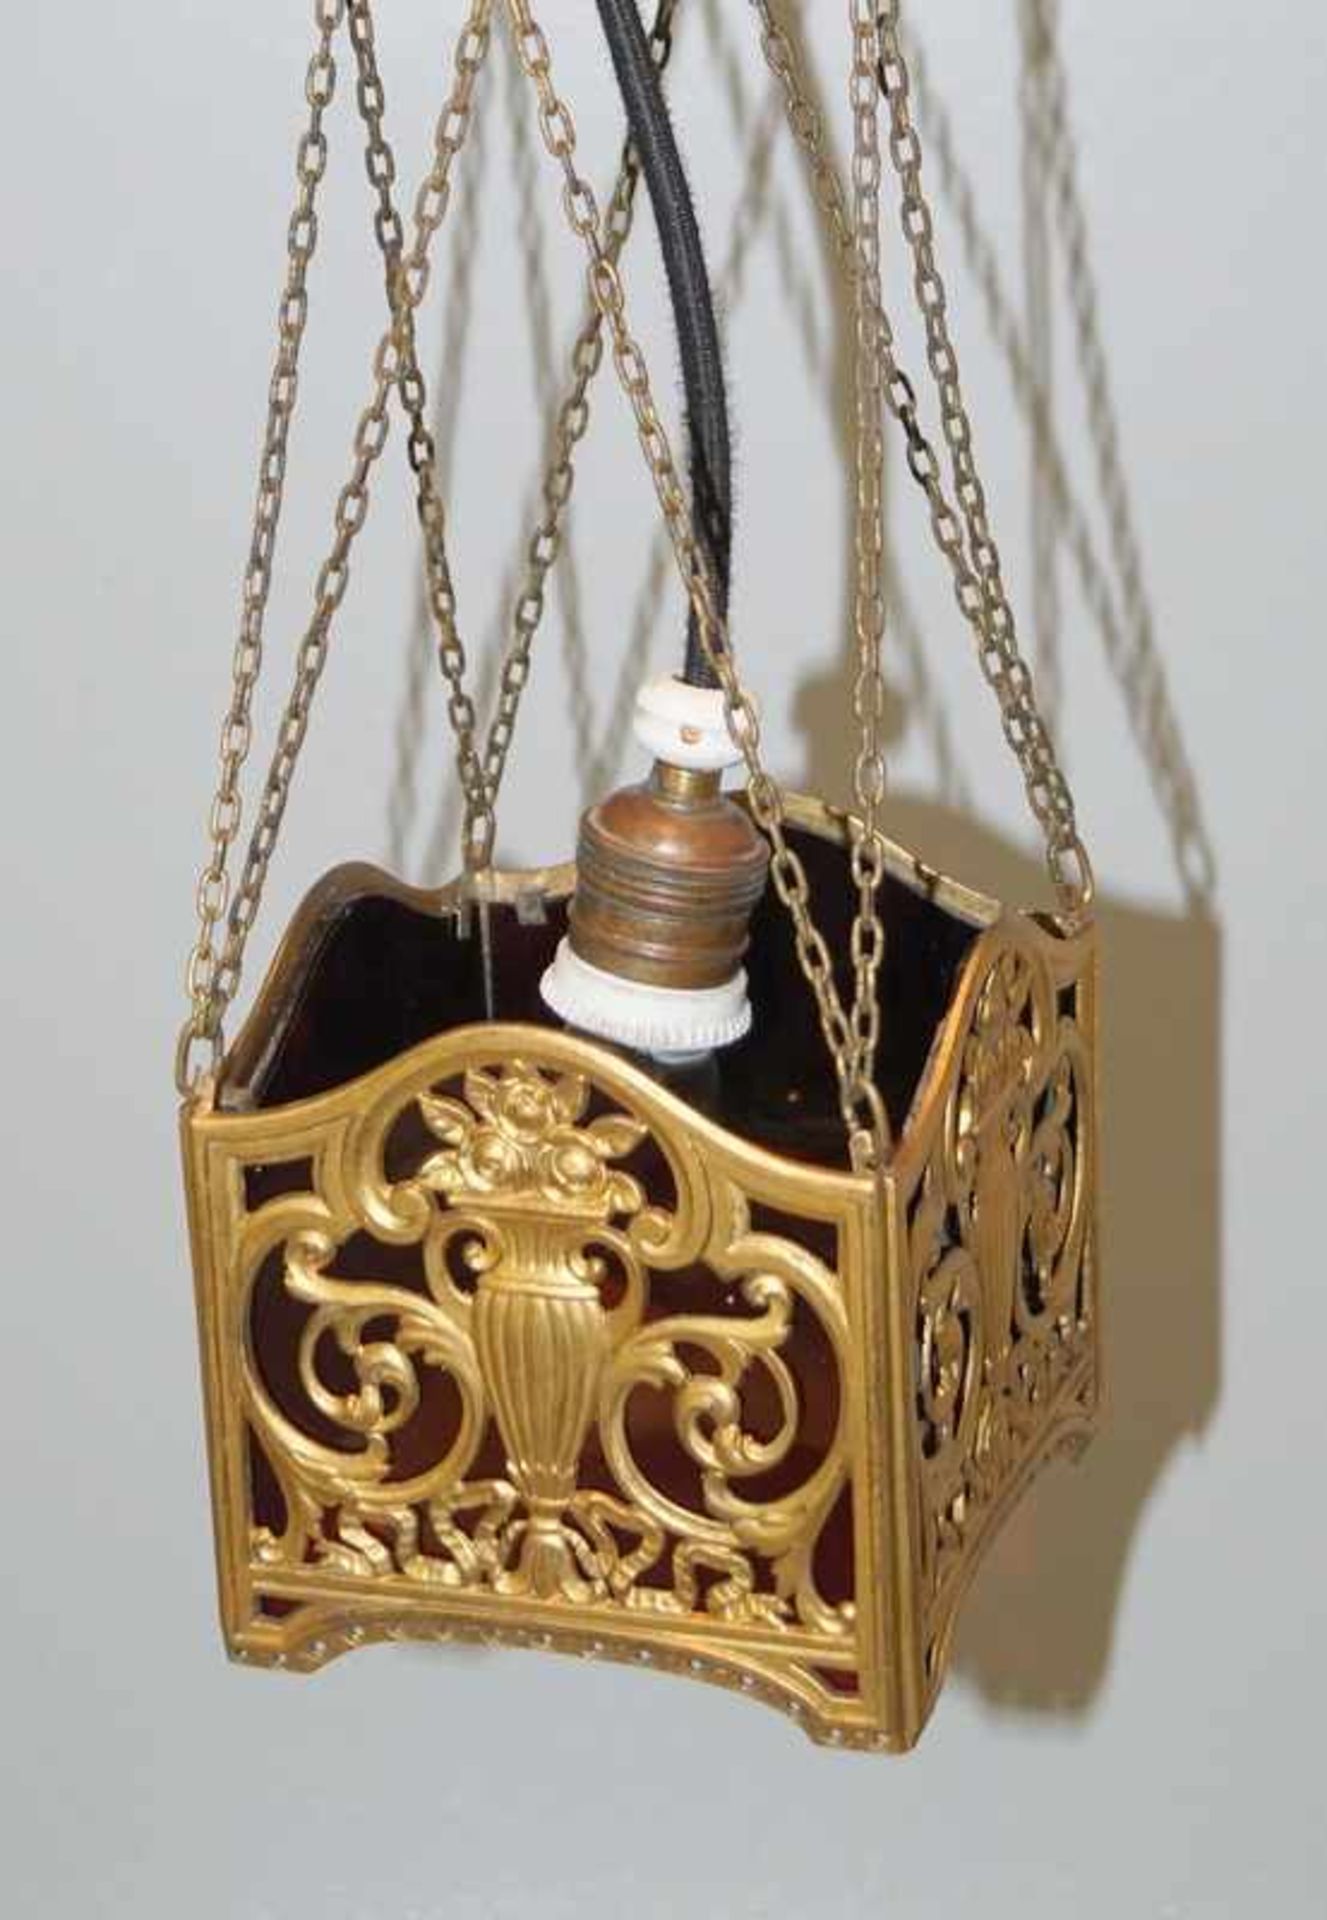 kleine Deckenlampe im Biedermeier-Stil, um 1900 Messing vergoldet, innen granatrotes Glas, die